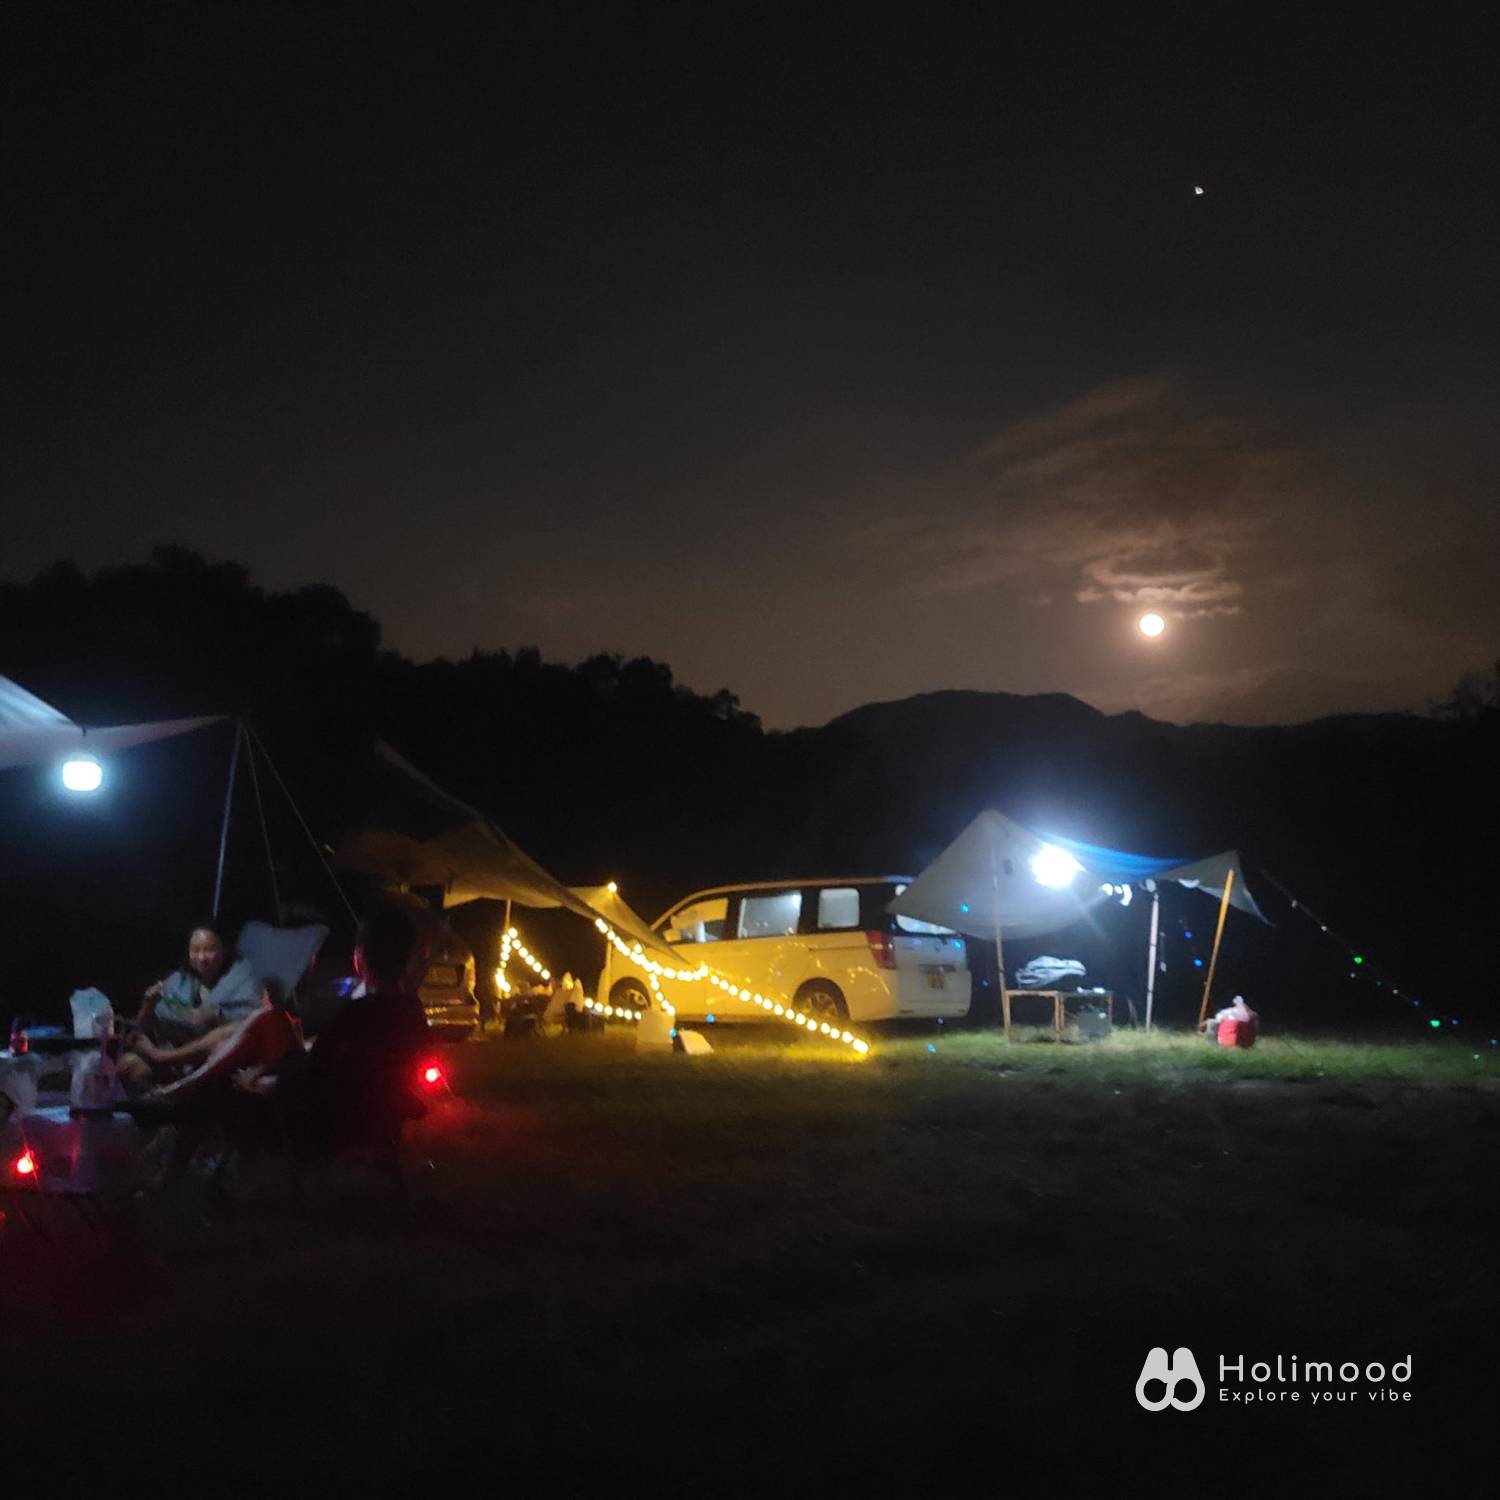 綠行鳥 - 大棠Car Camping + Glamping & 紅葉營地 【大棠露營體驗】 自攜營帳 5